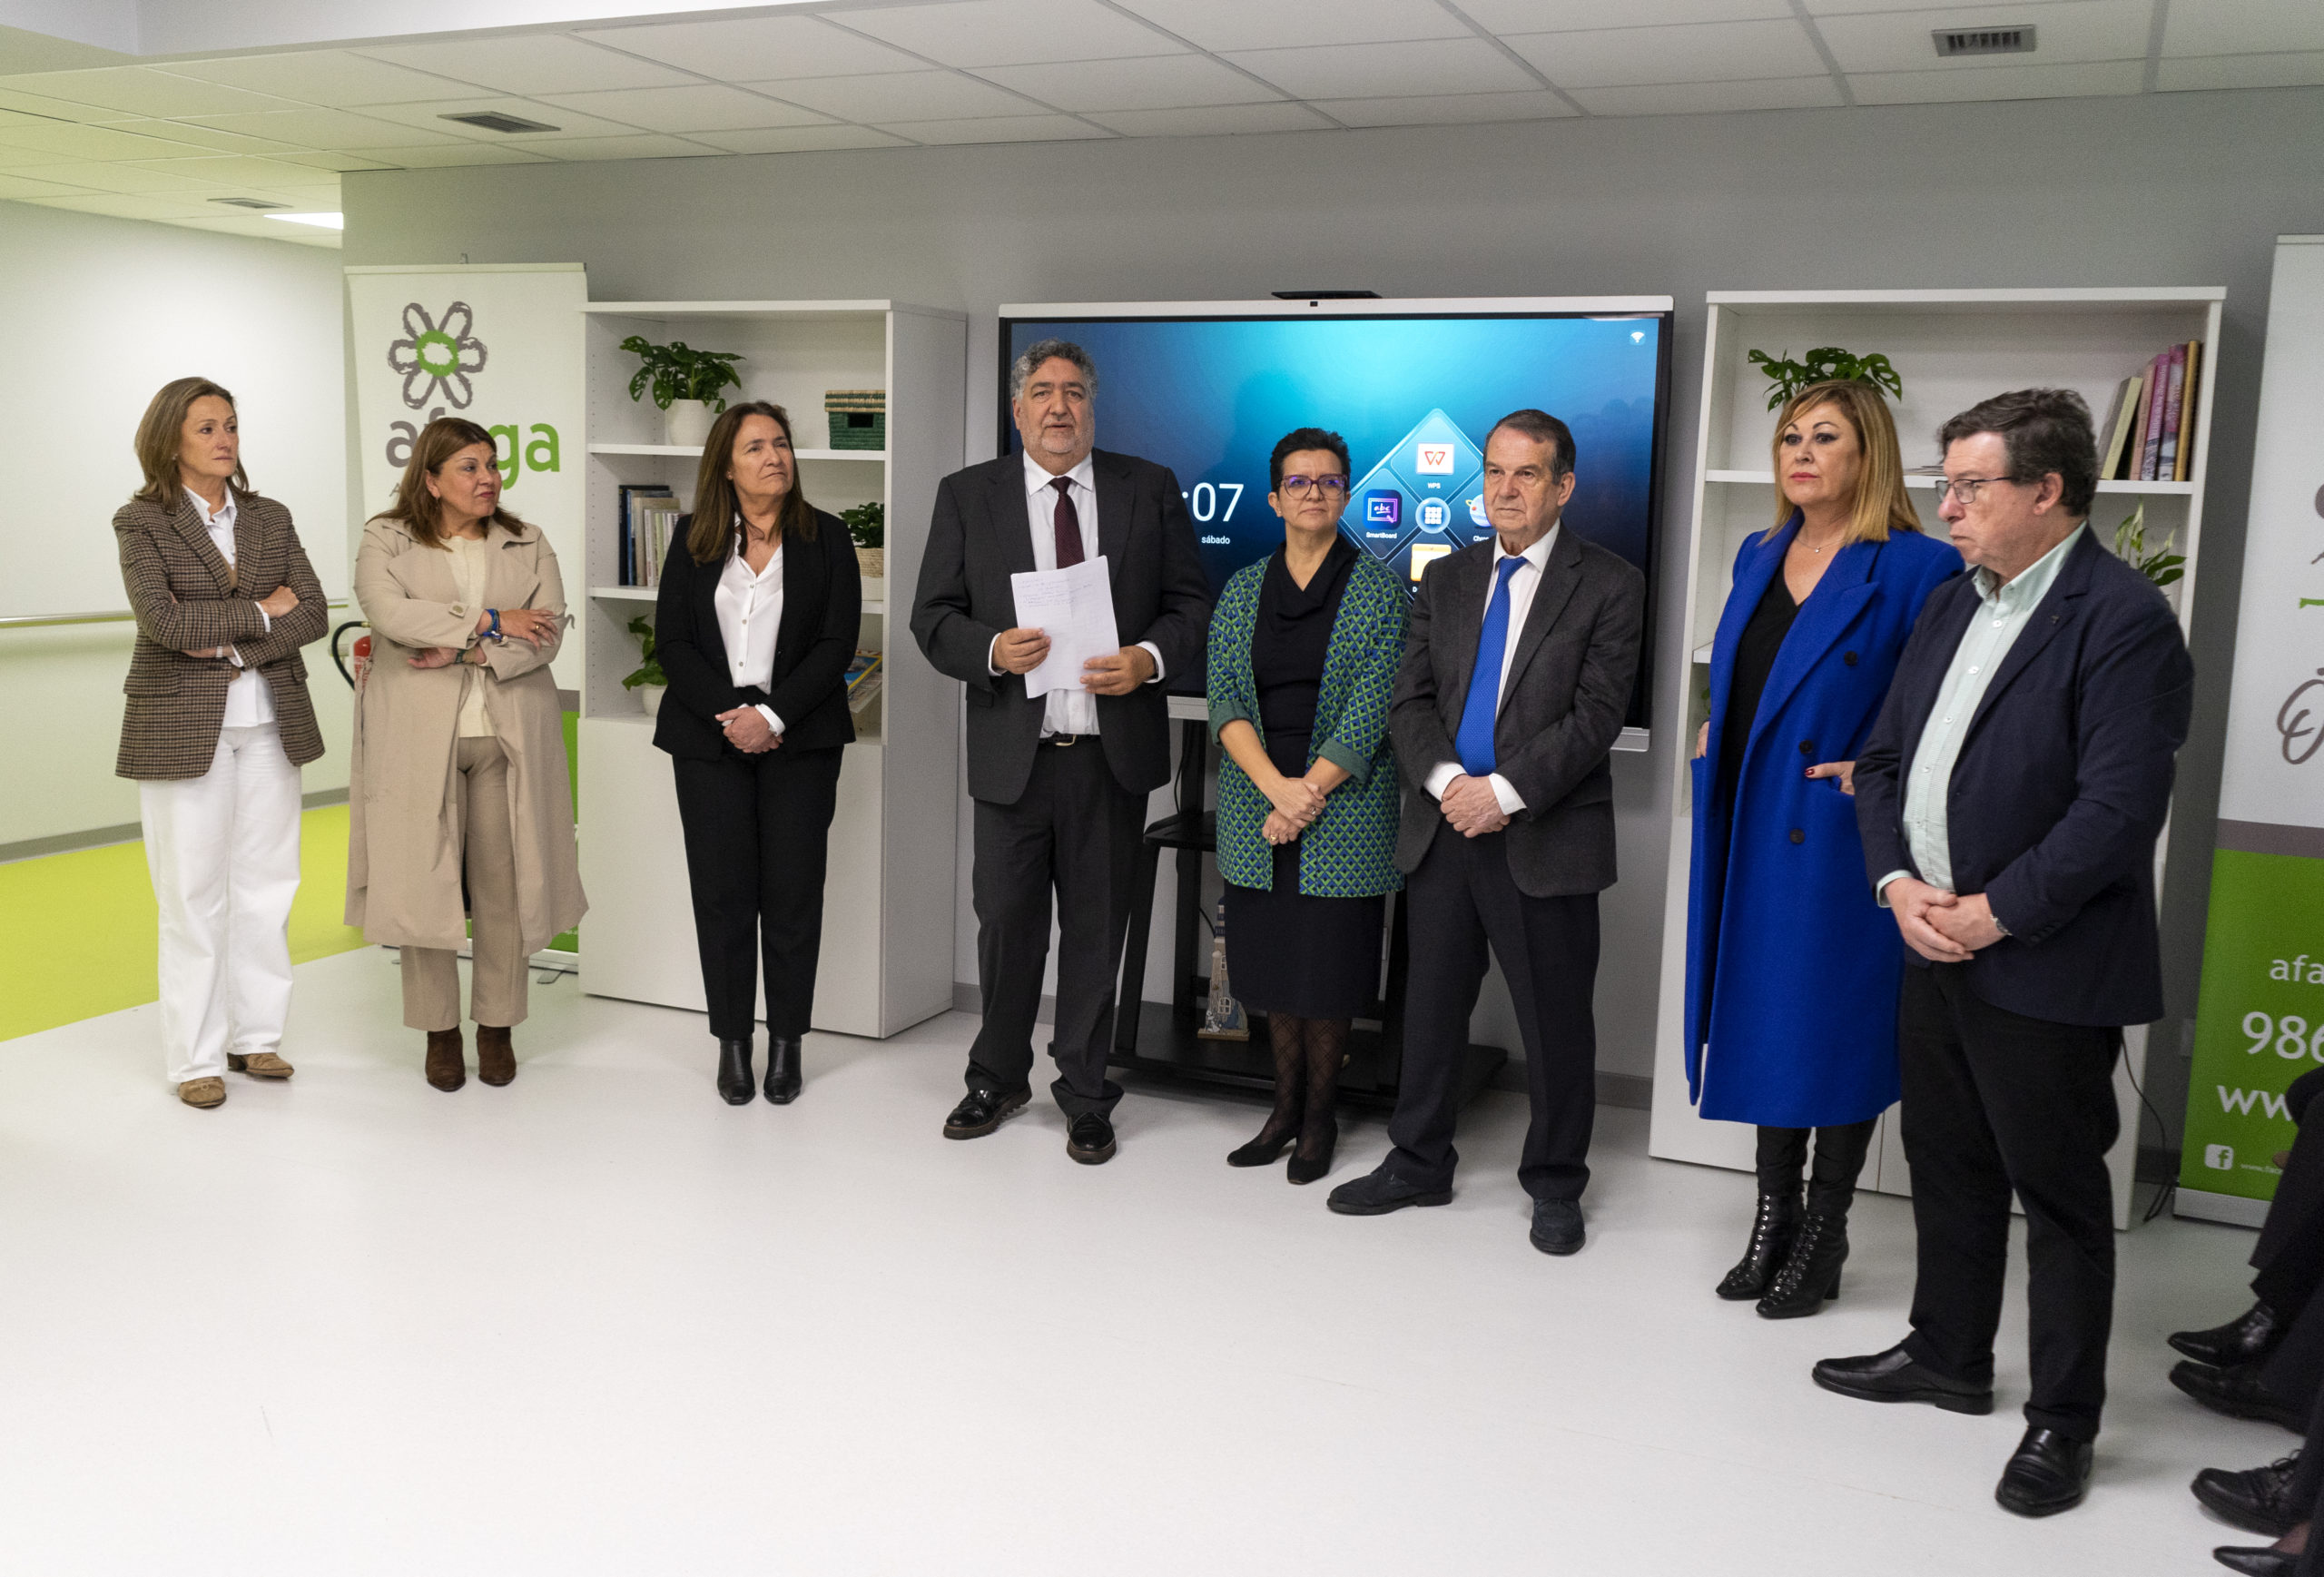 AFAGA inaugura en Vigo el primer centro gallego de innovación y atención a la longevidad